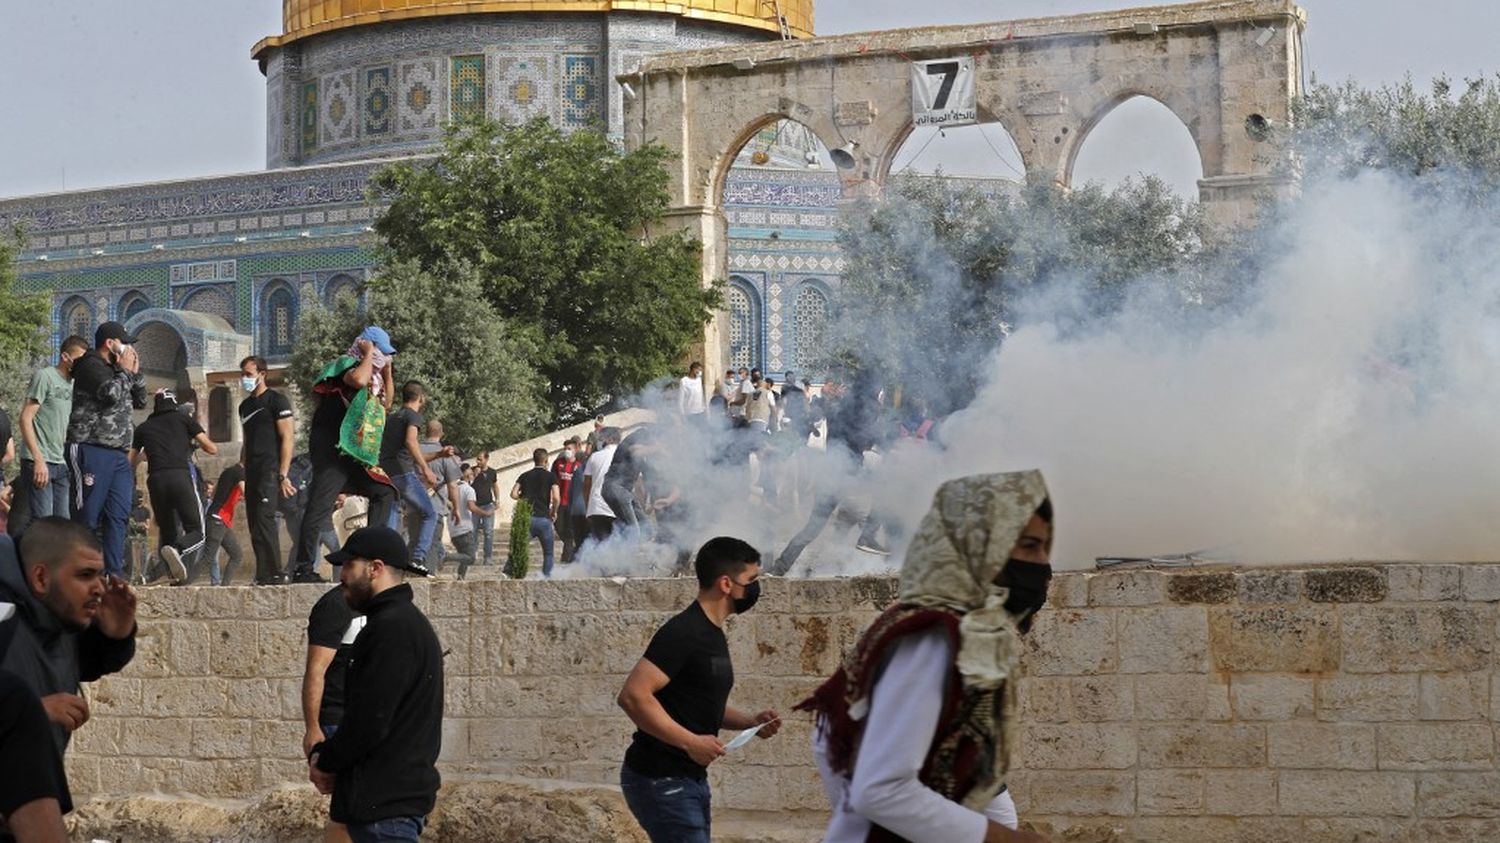 Jérusalem: des heurts signalés entre manifestants palestiniens et policiers israéliens sur l'Esplanade des Mosquées